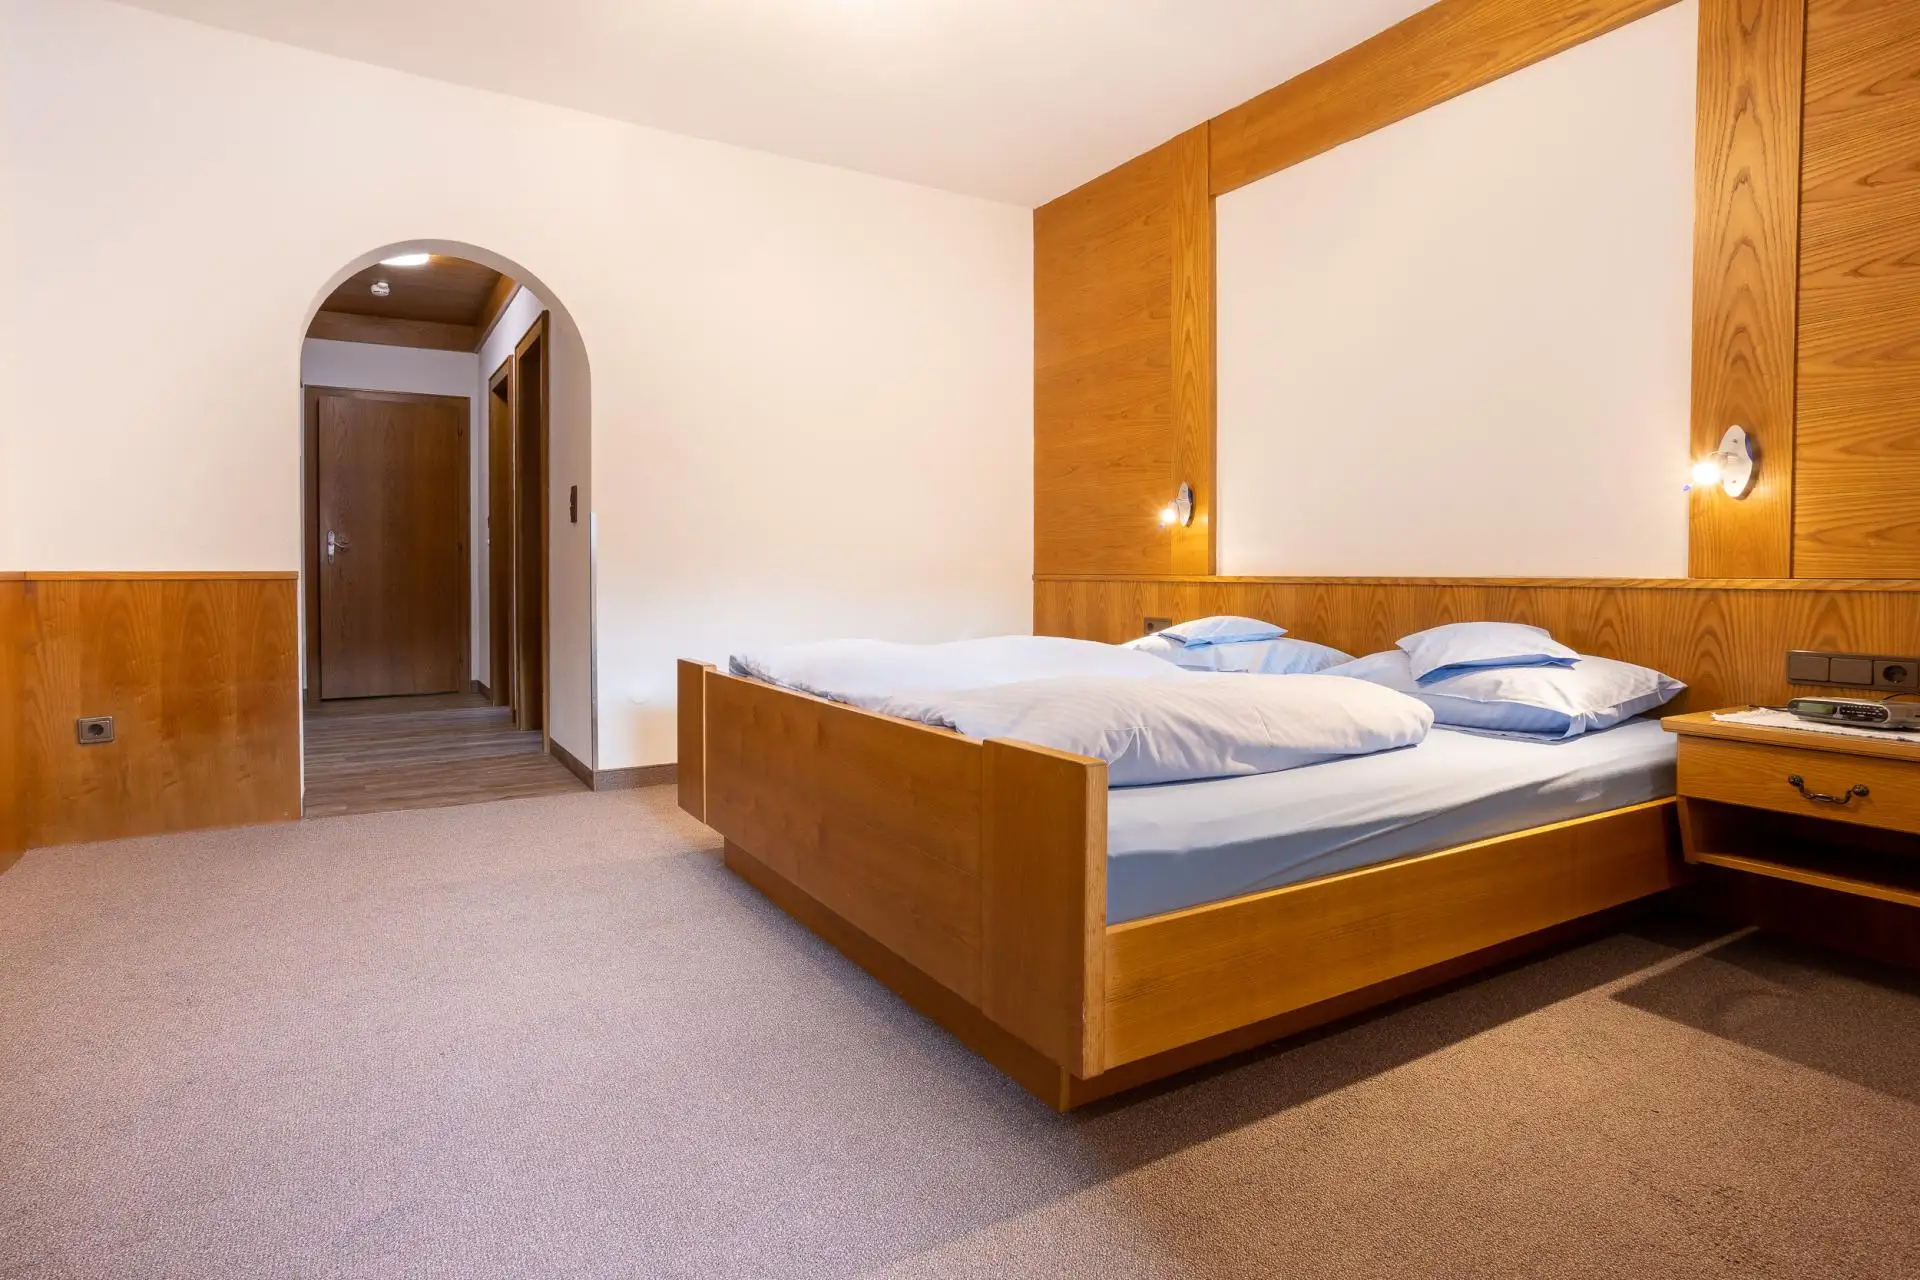 Komfortzimmer mit Wohn-Schlafraum und Küchenzeile